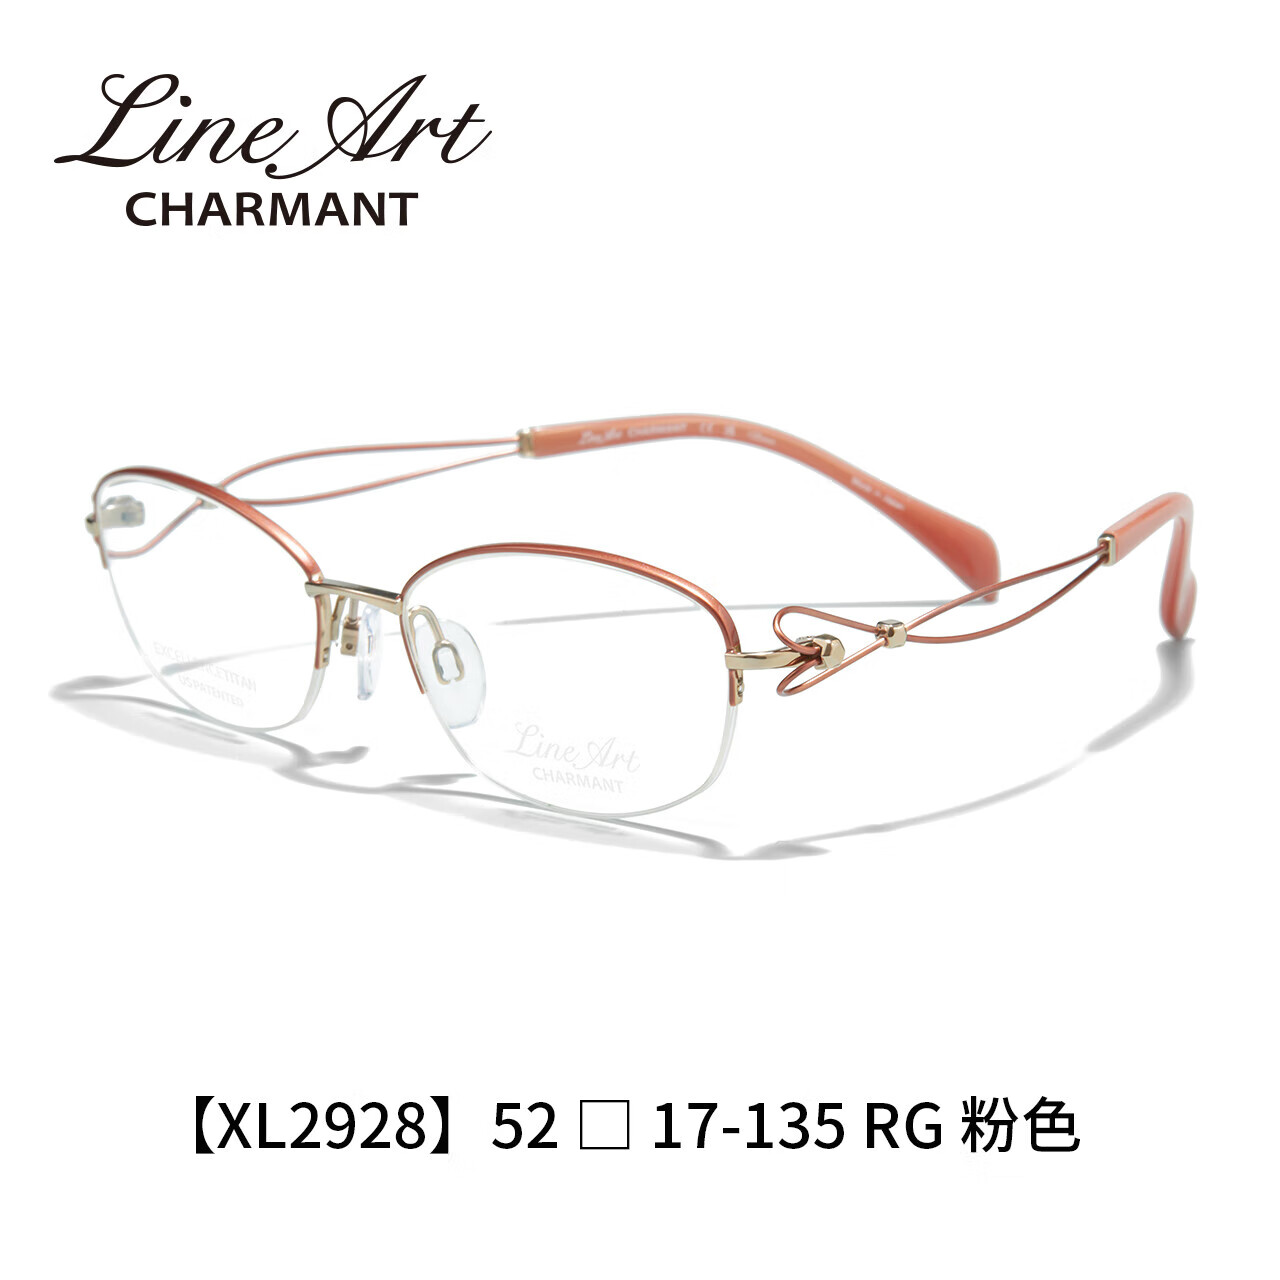 夏蒙（Charmant）线钛系列眼镜女士钛合金XL2928 RG 单镜框 RG-粉色